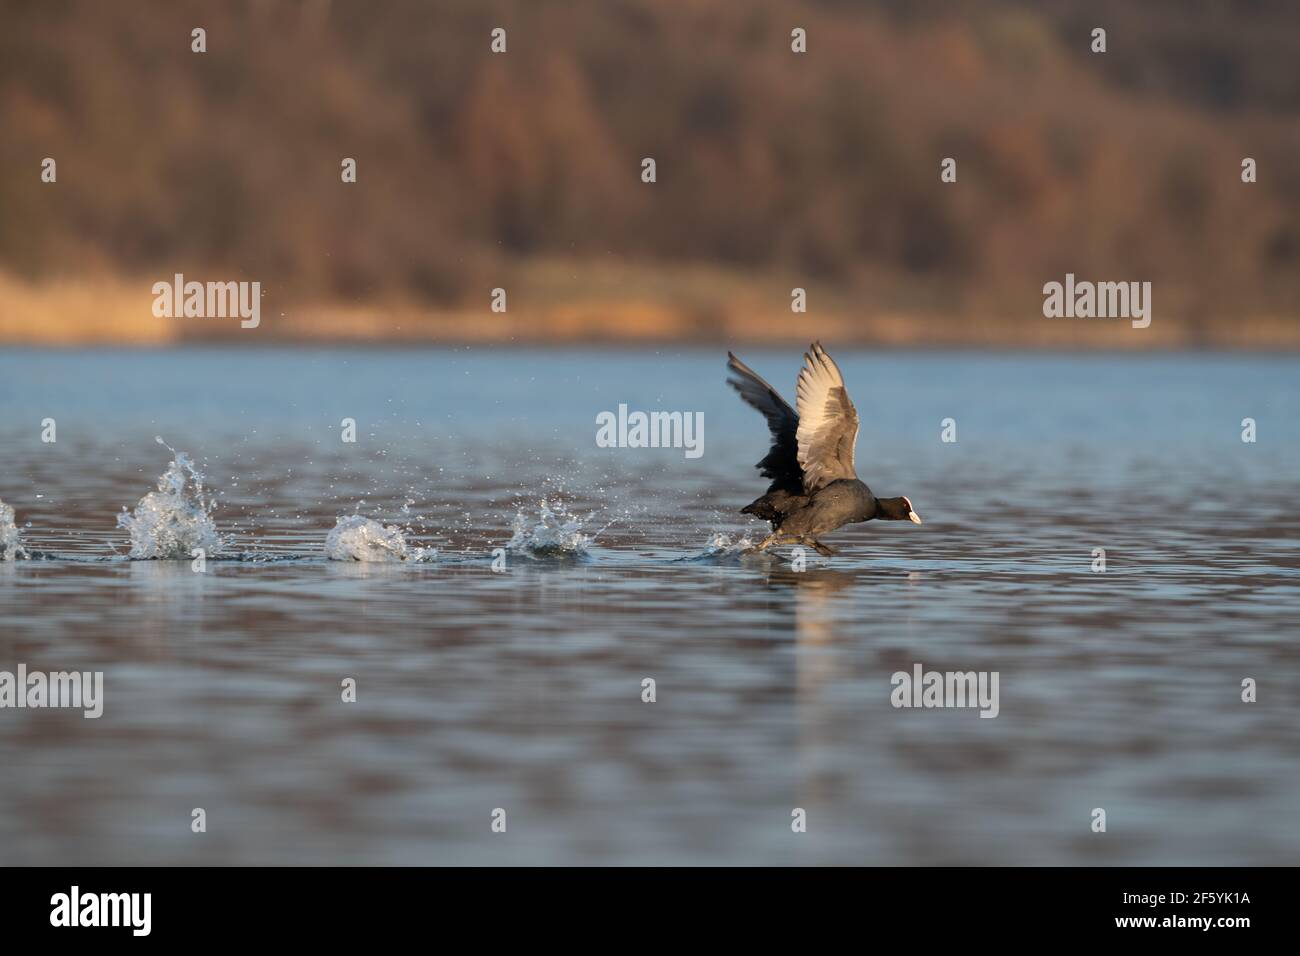 Eurasischer Ruß (Fulica atra) mit ausgestreckten Flügeln läuft auf Wasser. Schwarzer Vogel Rutenente läuft auf See Stockfoto